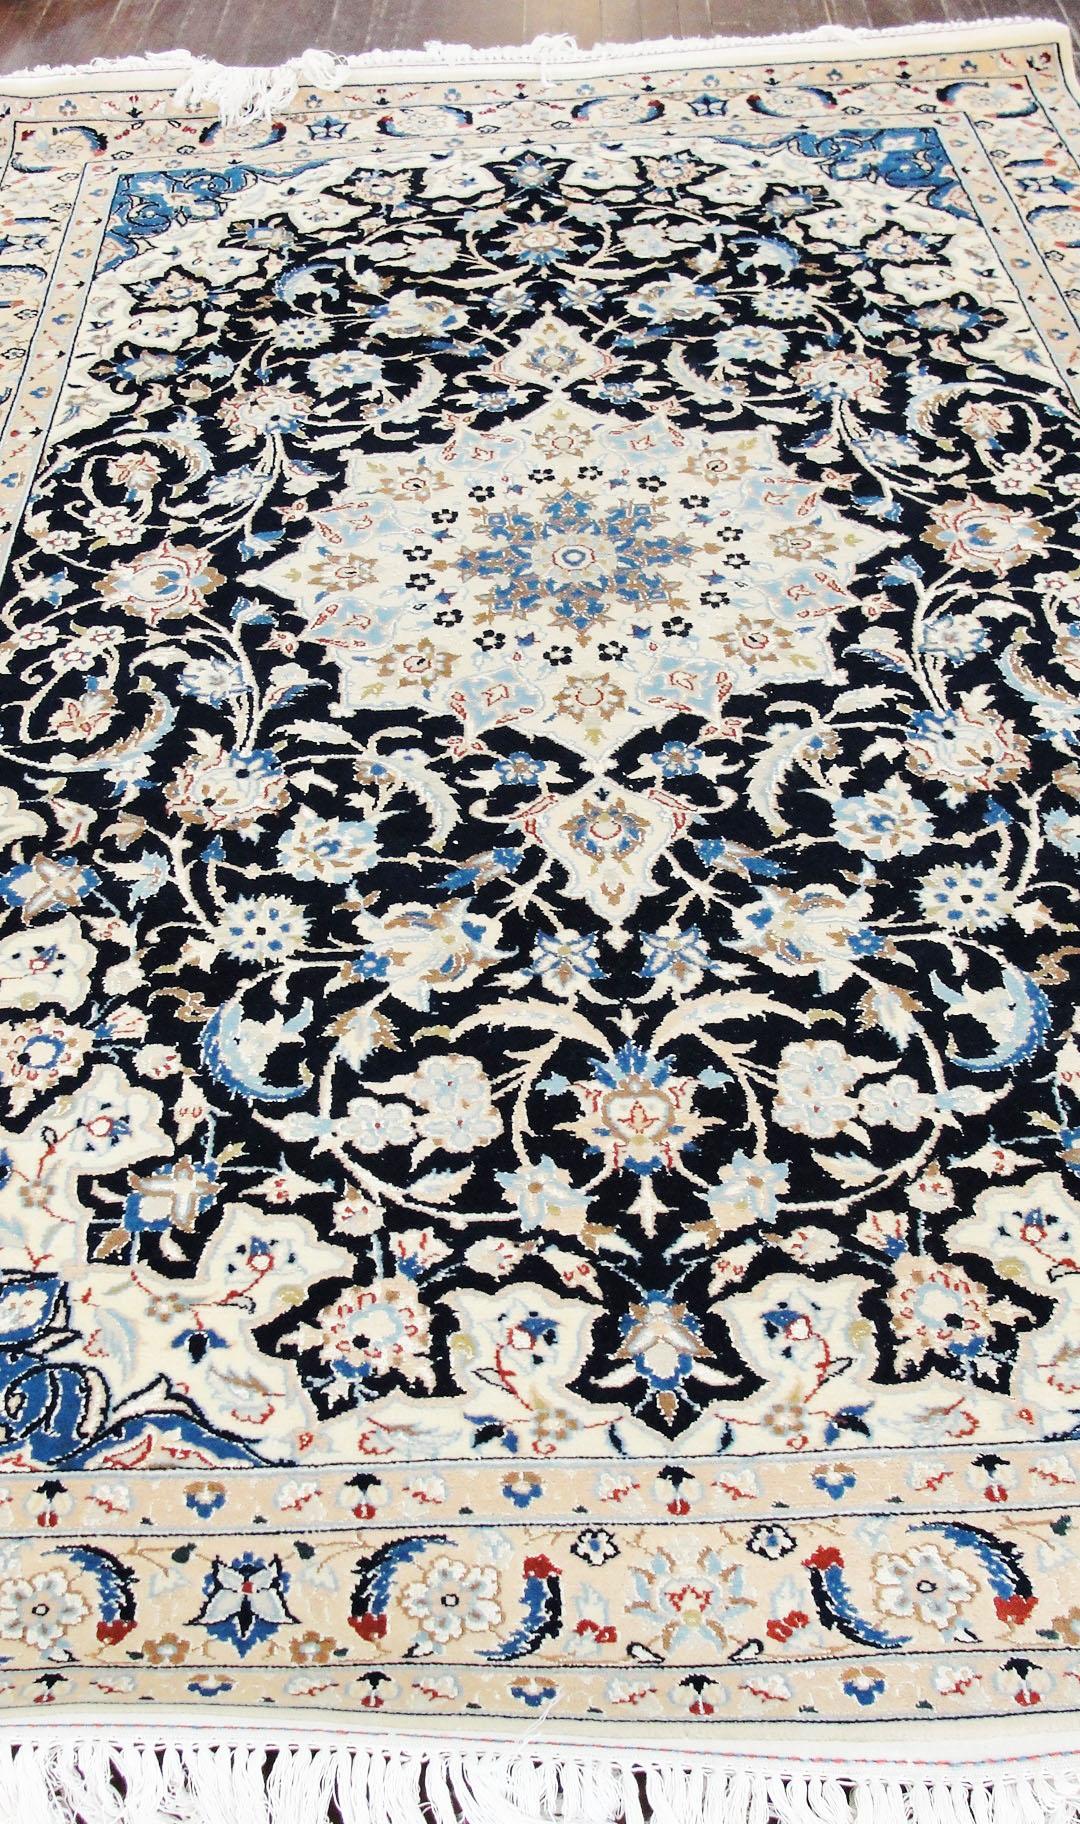 Hand-Knotted Persian Nain Carpet, woo & Silk, 5'2